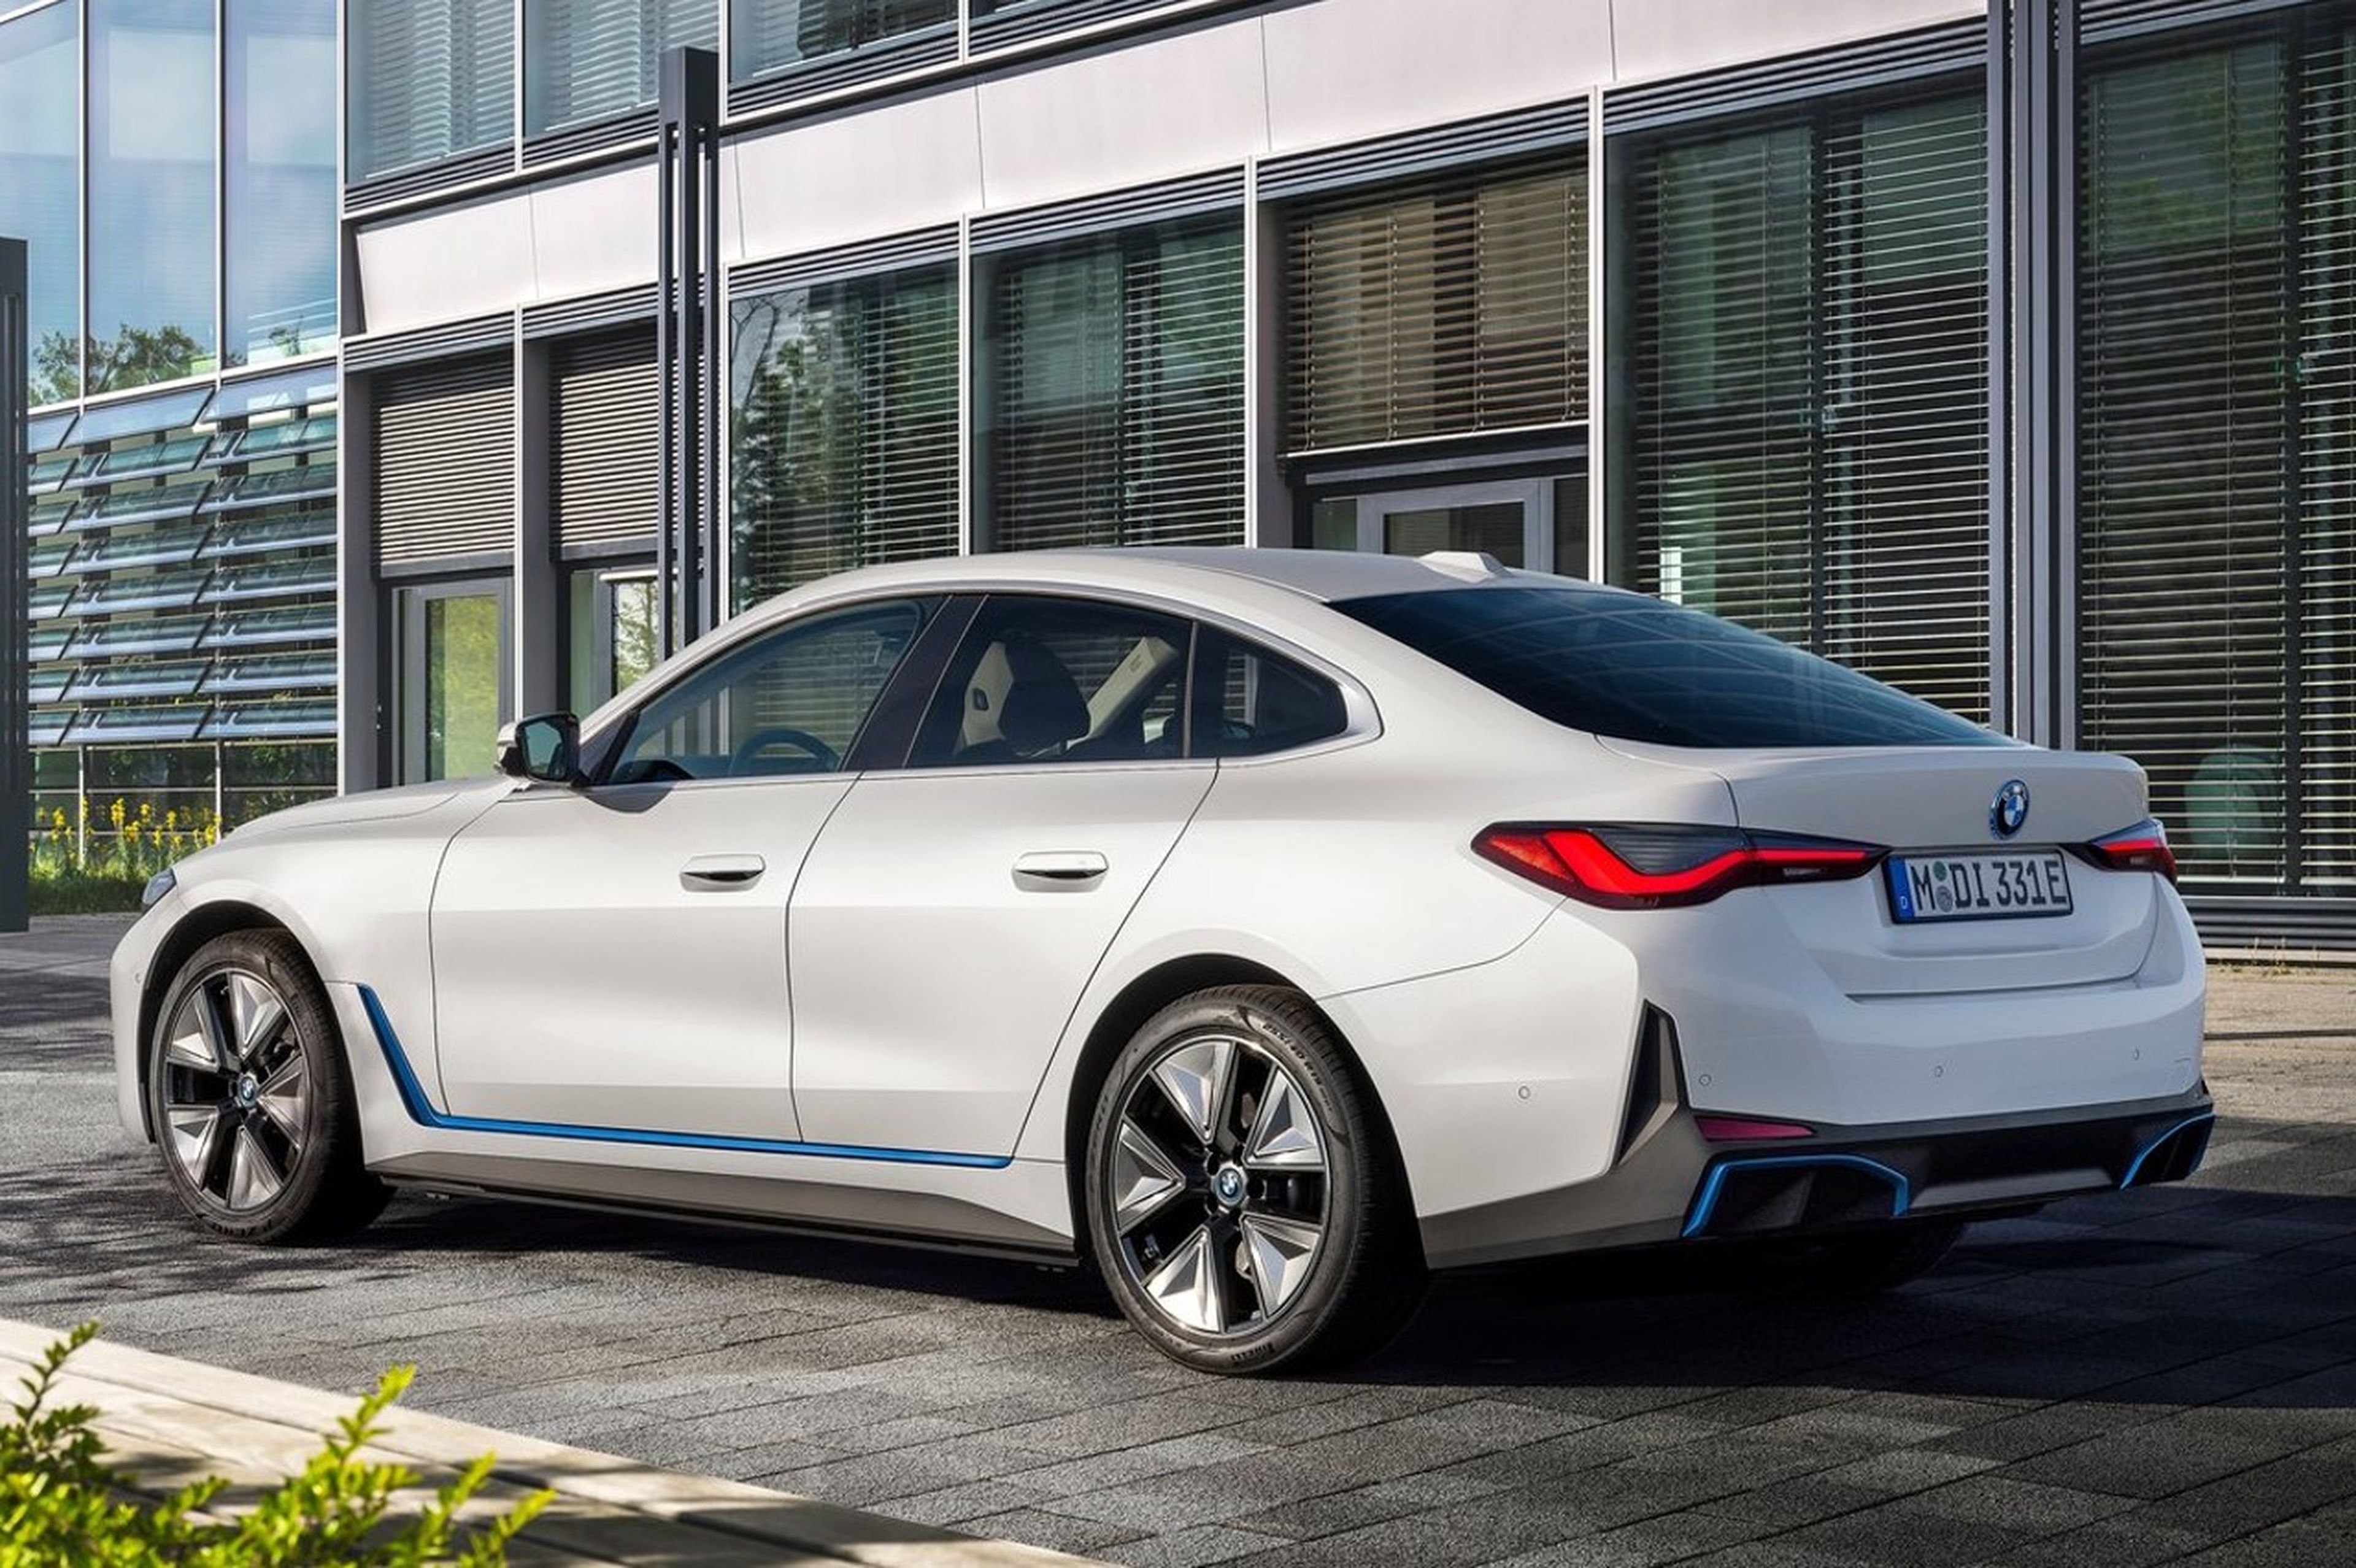 Supremacía de Tesla con el coche eléctrico ha terminado, según BMW